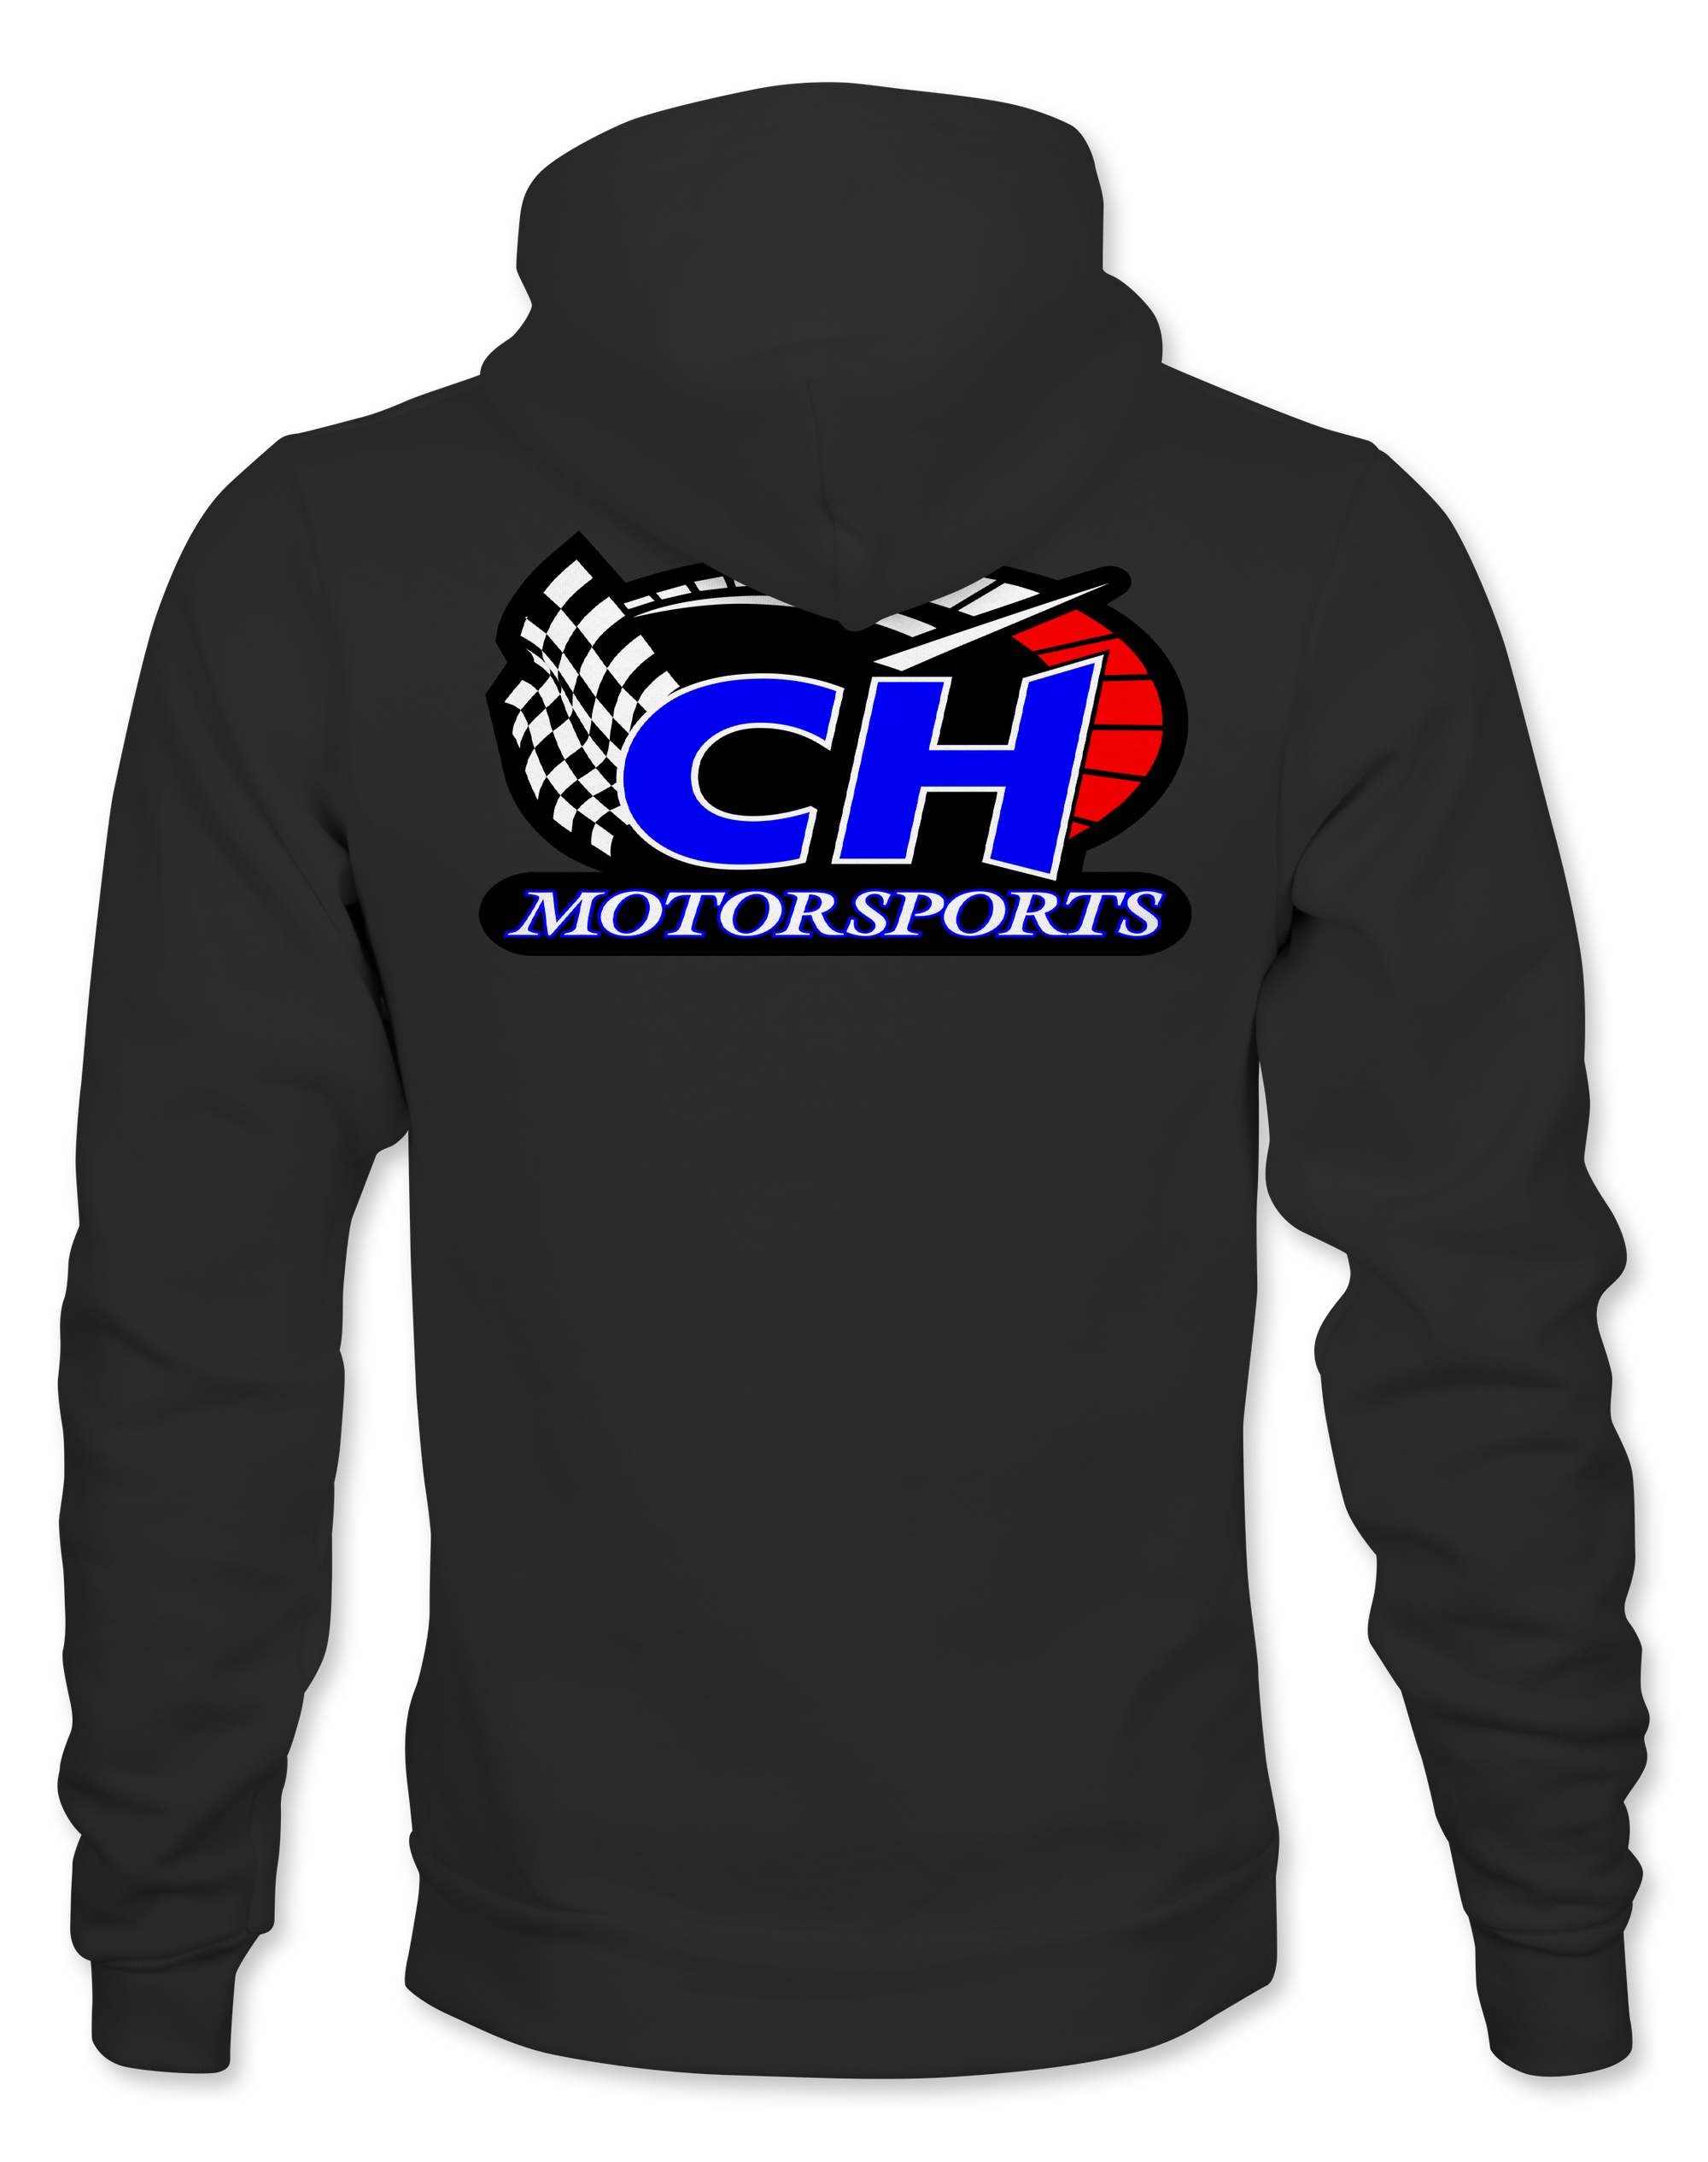 C&H Motorsports Hoodies Black Acid Apparel